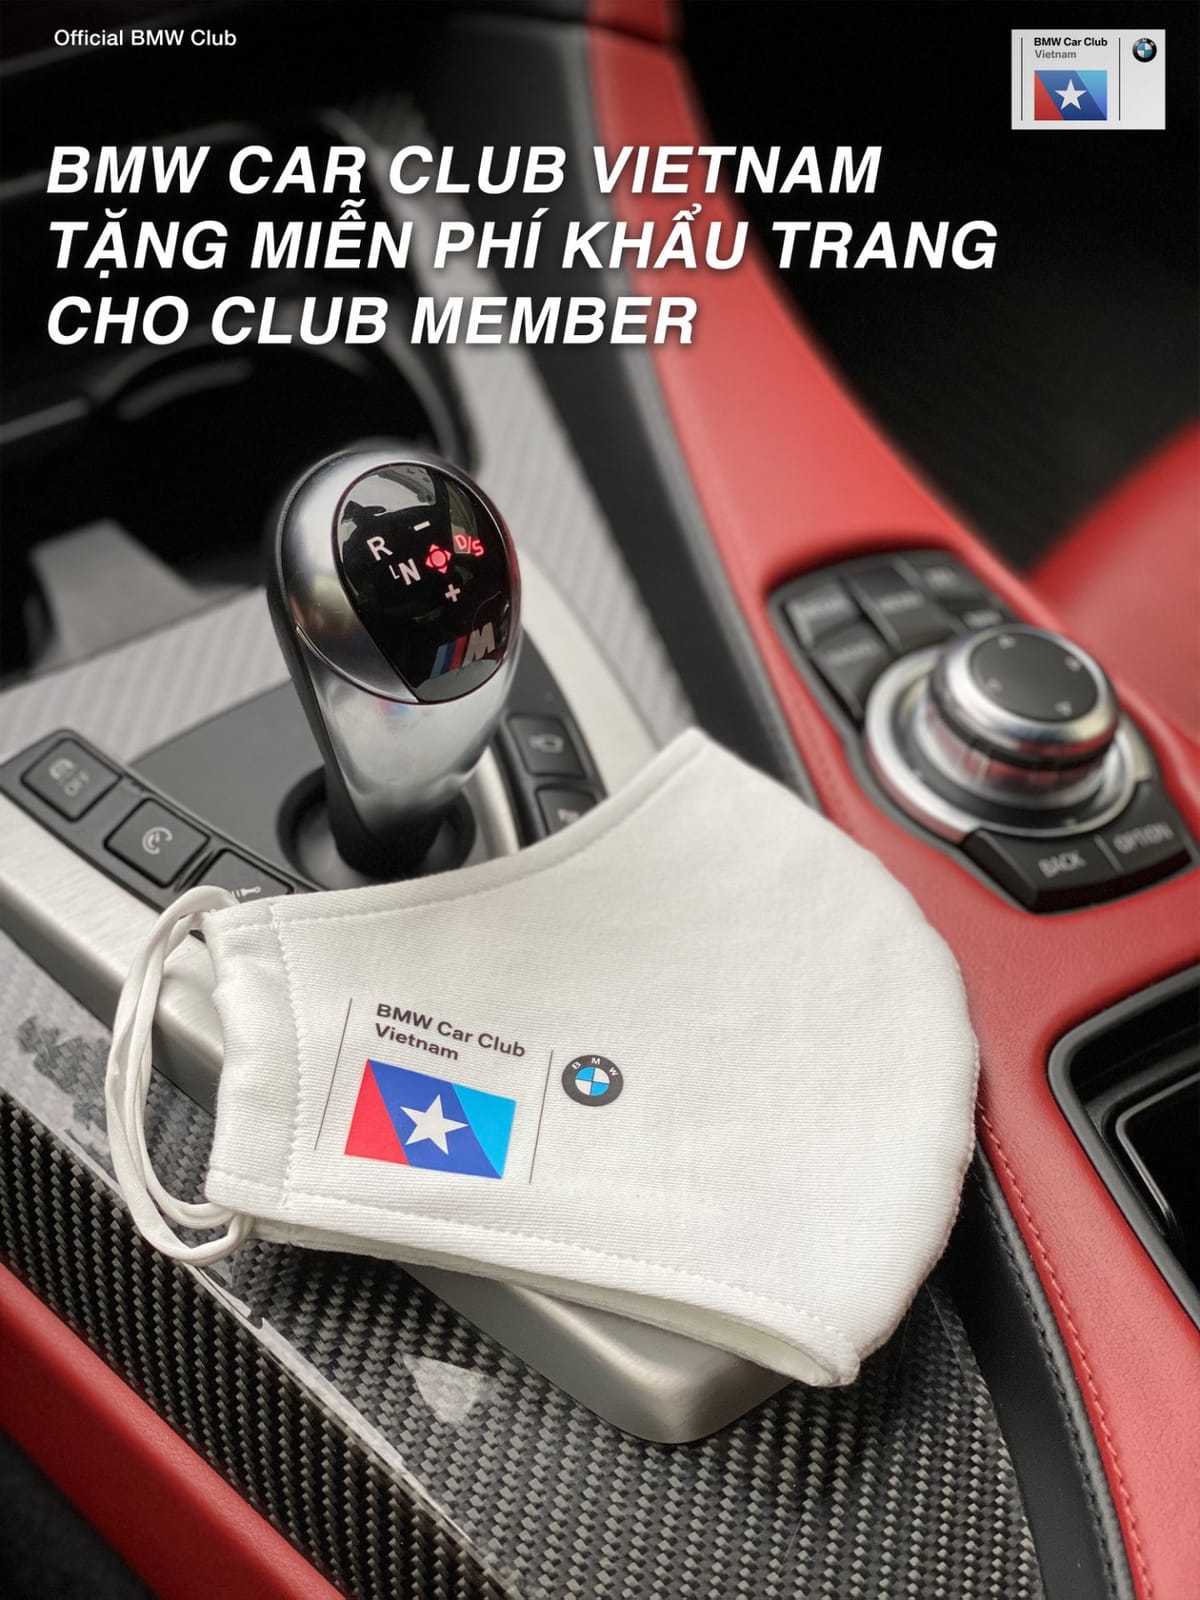 BMW Car Club Vietnam phát miễn phí khẩu trang cho thành viên